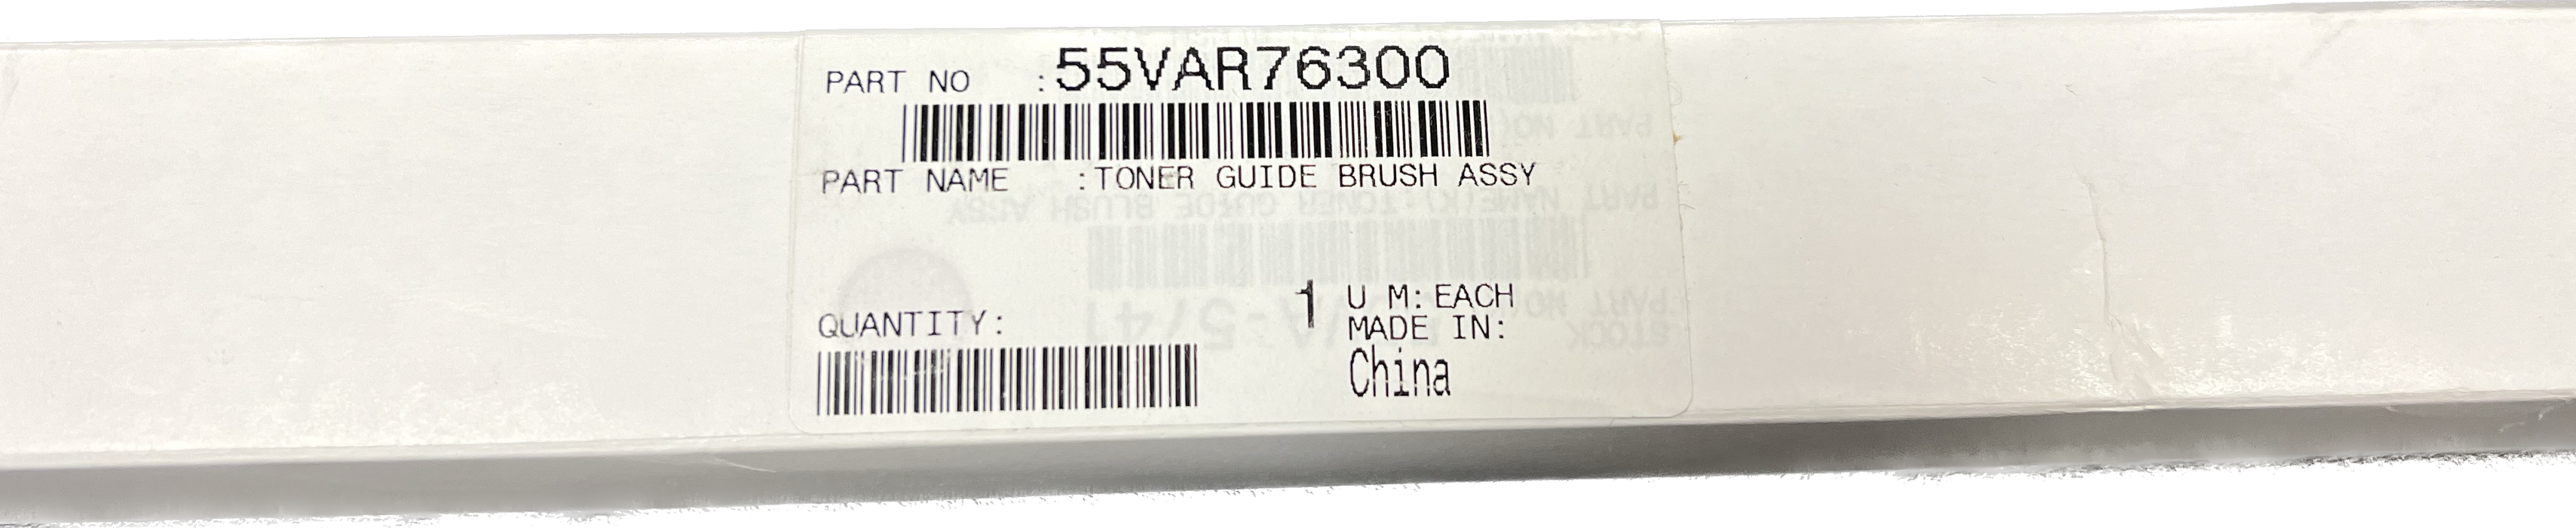 Konica Minolta Toner Guide Brush Assy | 55VAR76300